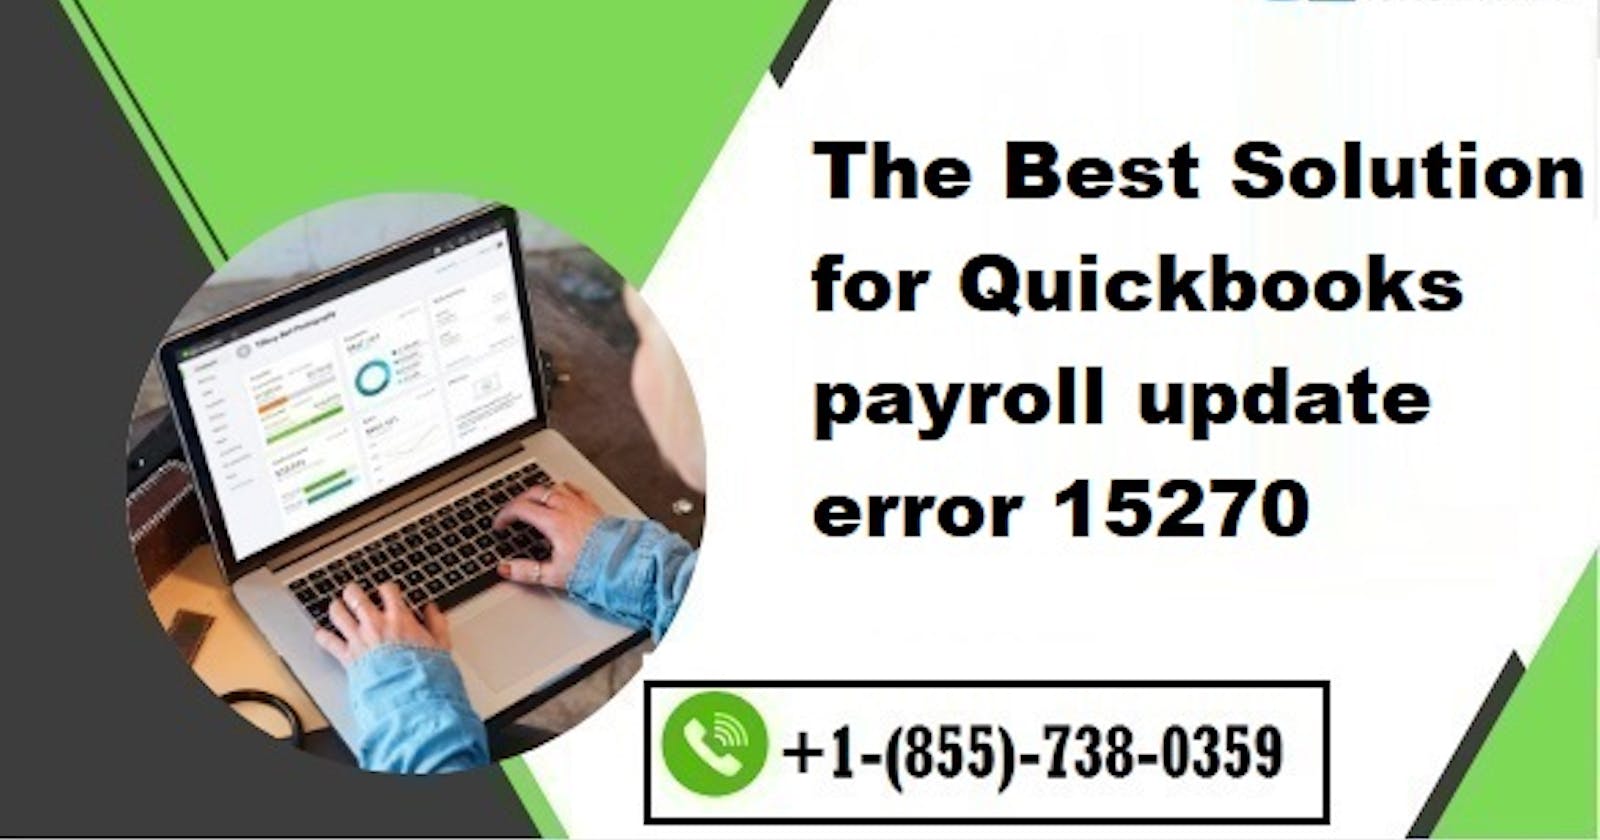 Easy solution for Quickbooks payroll update error 15270